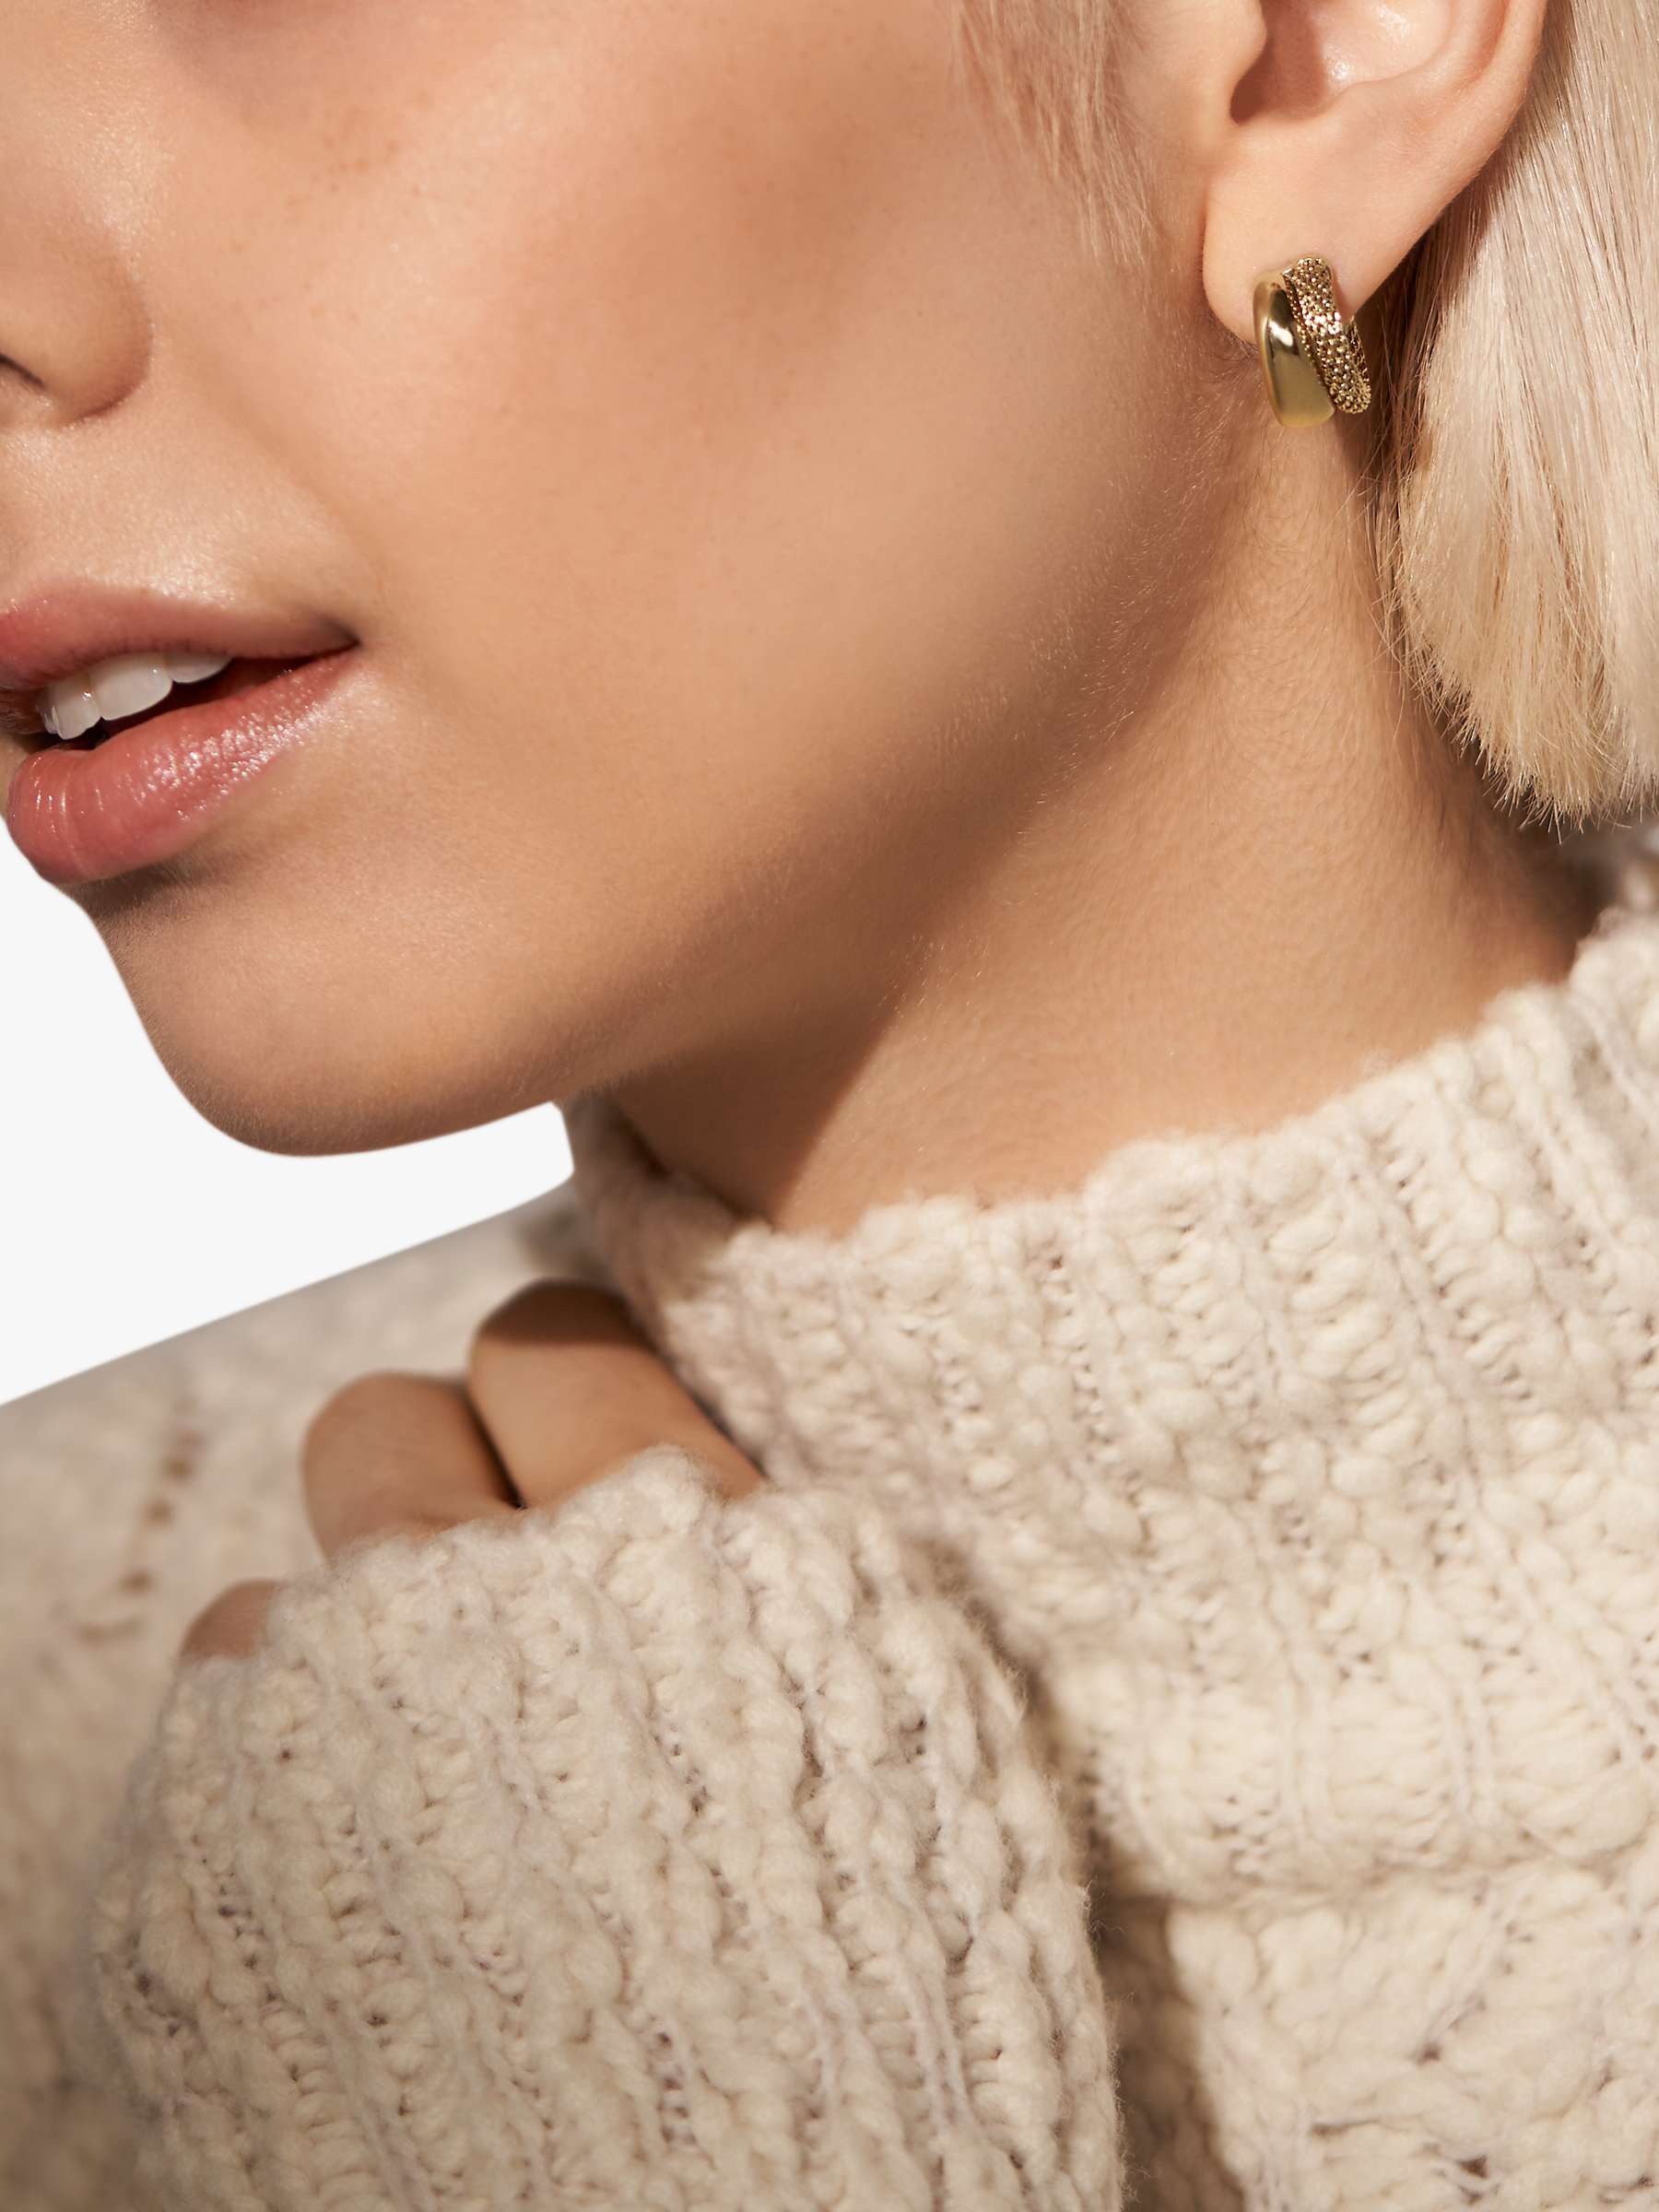 Buy Skagen Textured Huggie Hoop Earrings, Gold Online at johnlewis.com